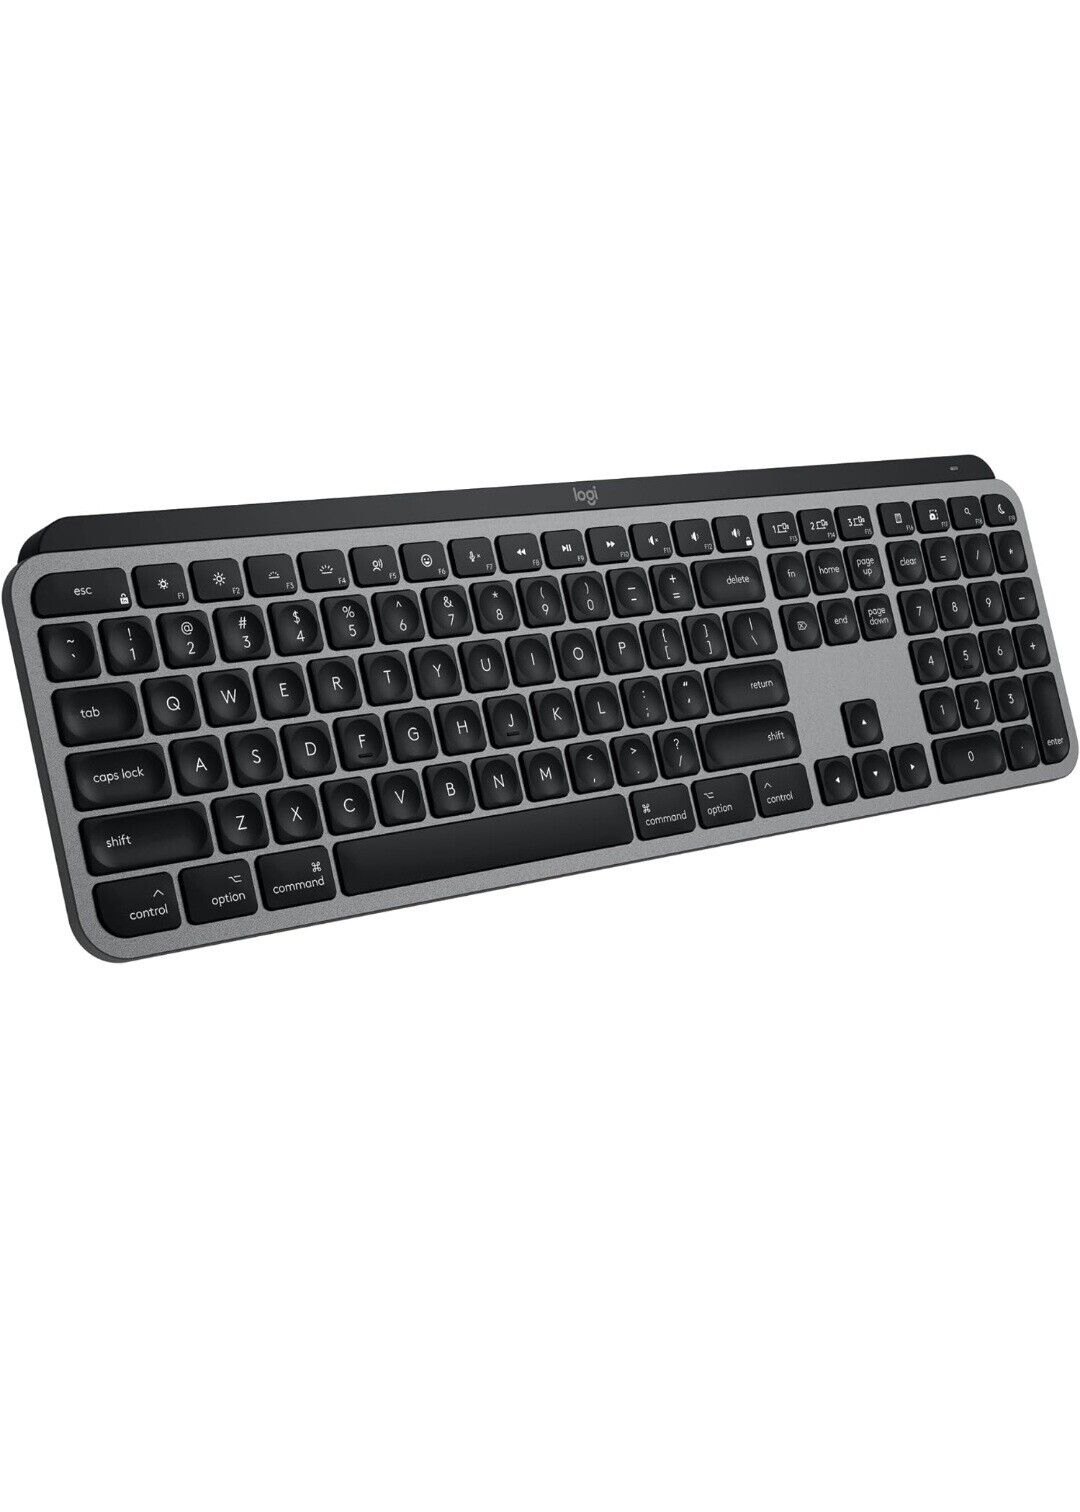 Logitech MX Keys S For Mac, Full-Size Bluetooth Wireless Keyboard - Space Grey